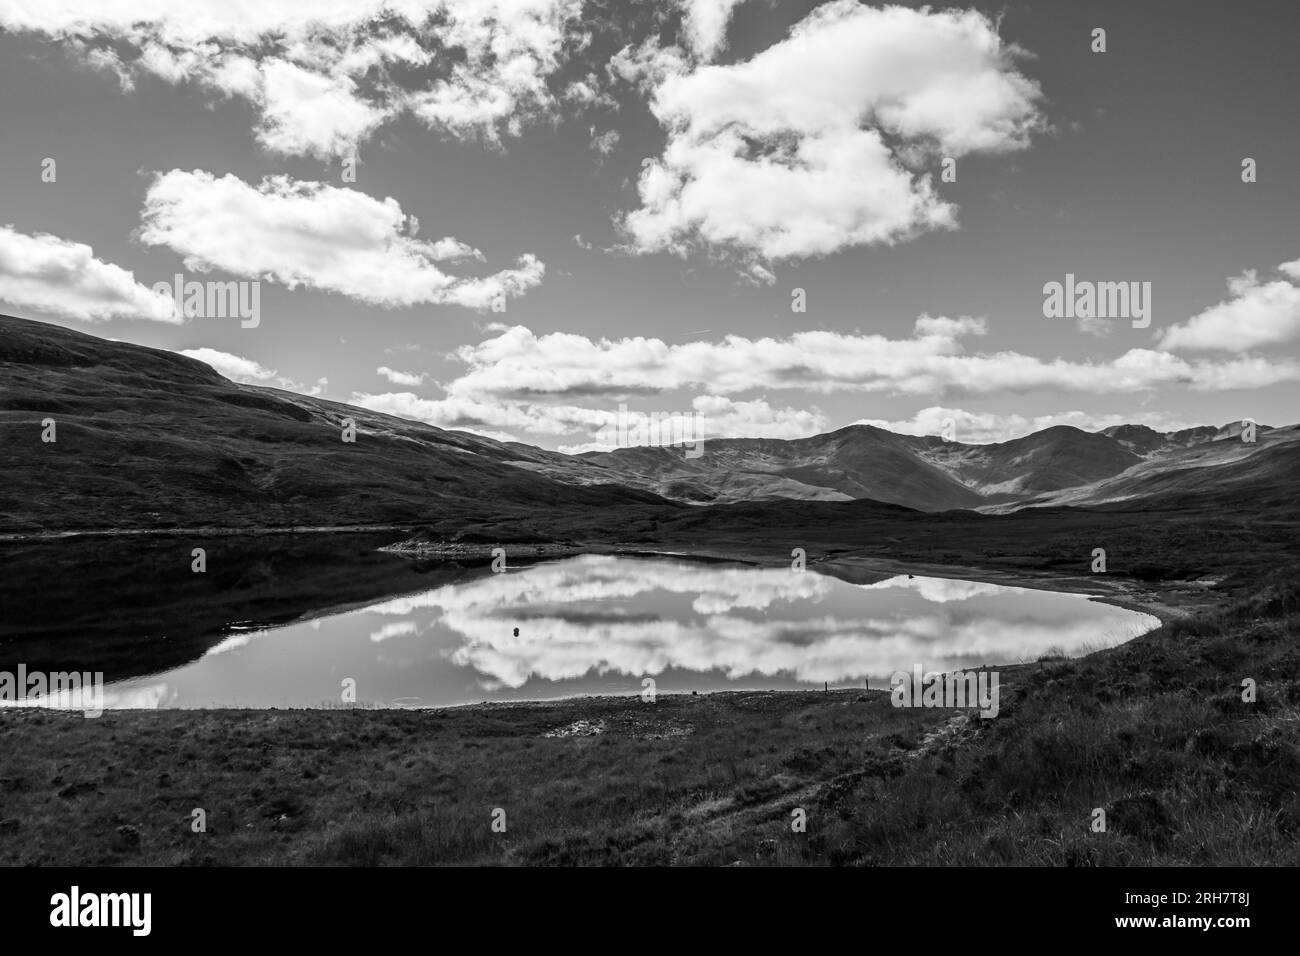 Blick auf Loch und Berge im Hochland von Scotlands in Schwarz-weiß Stockfoto